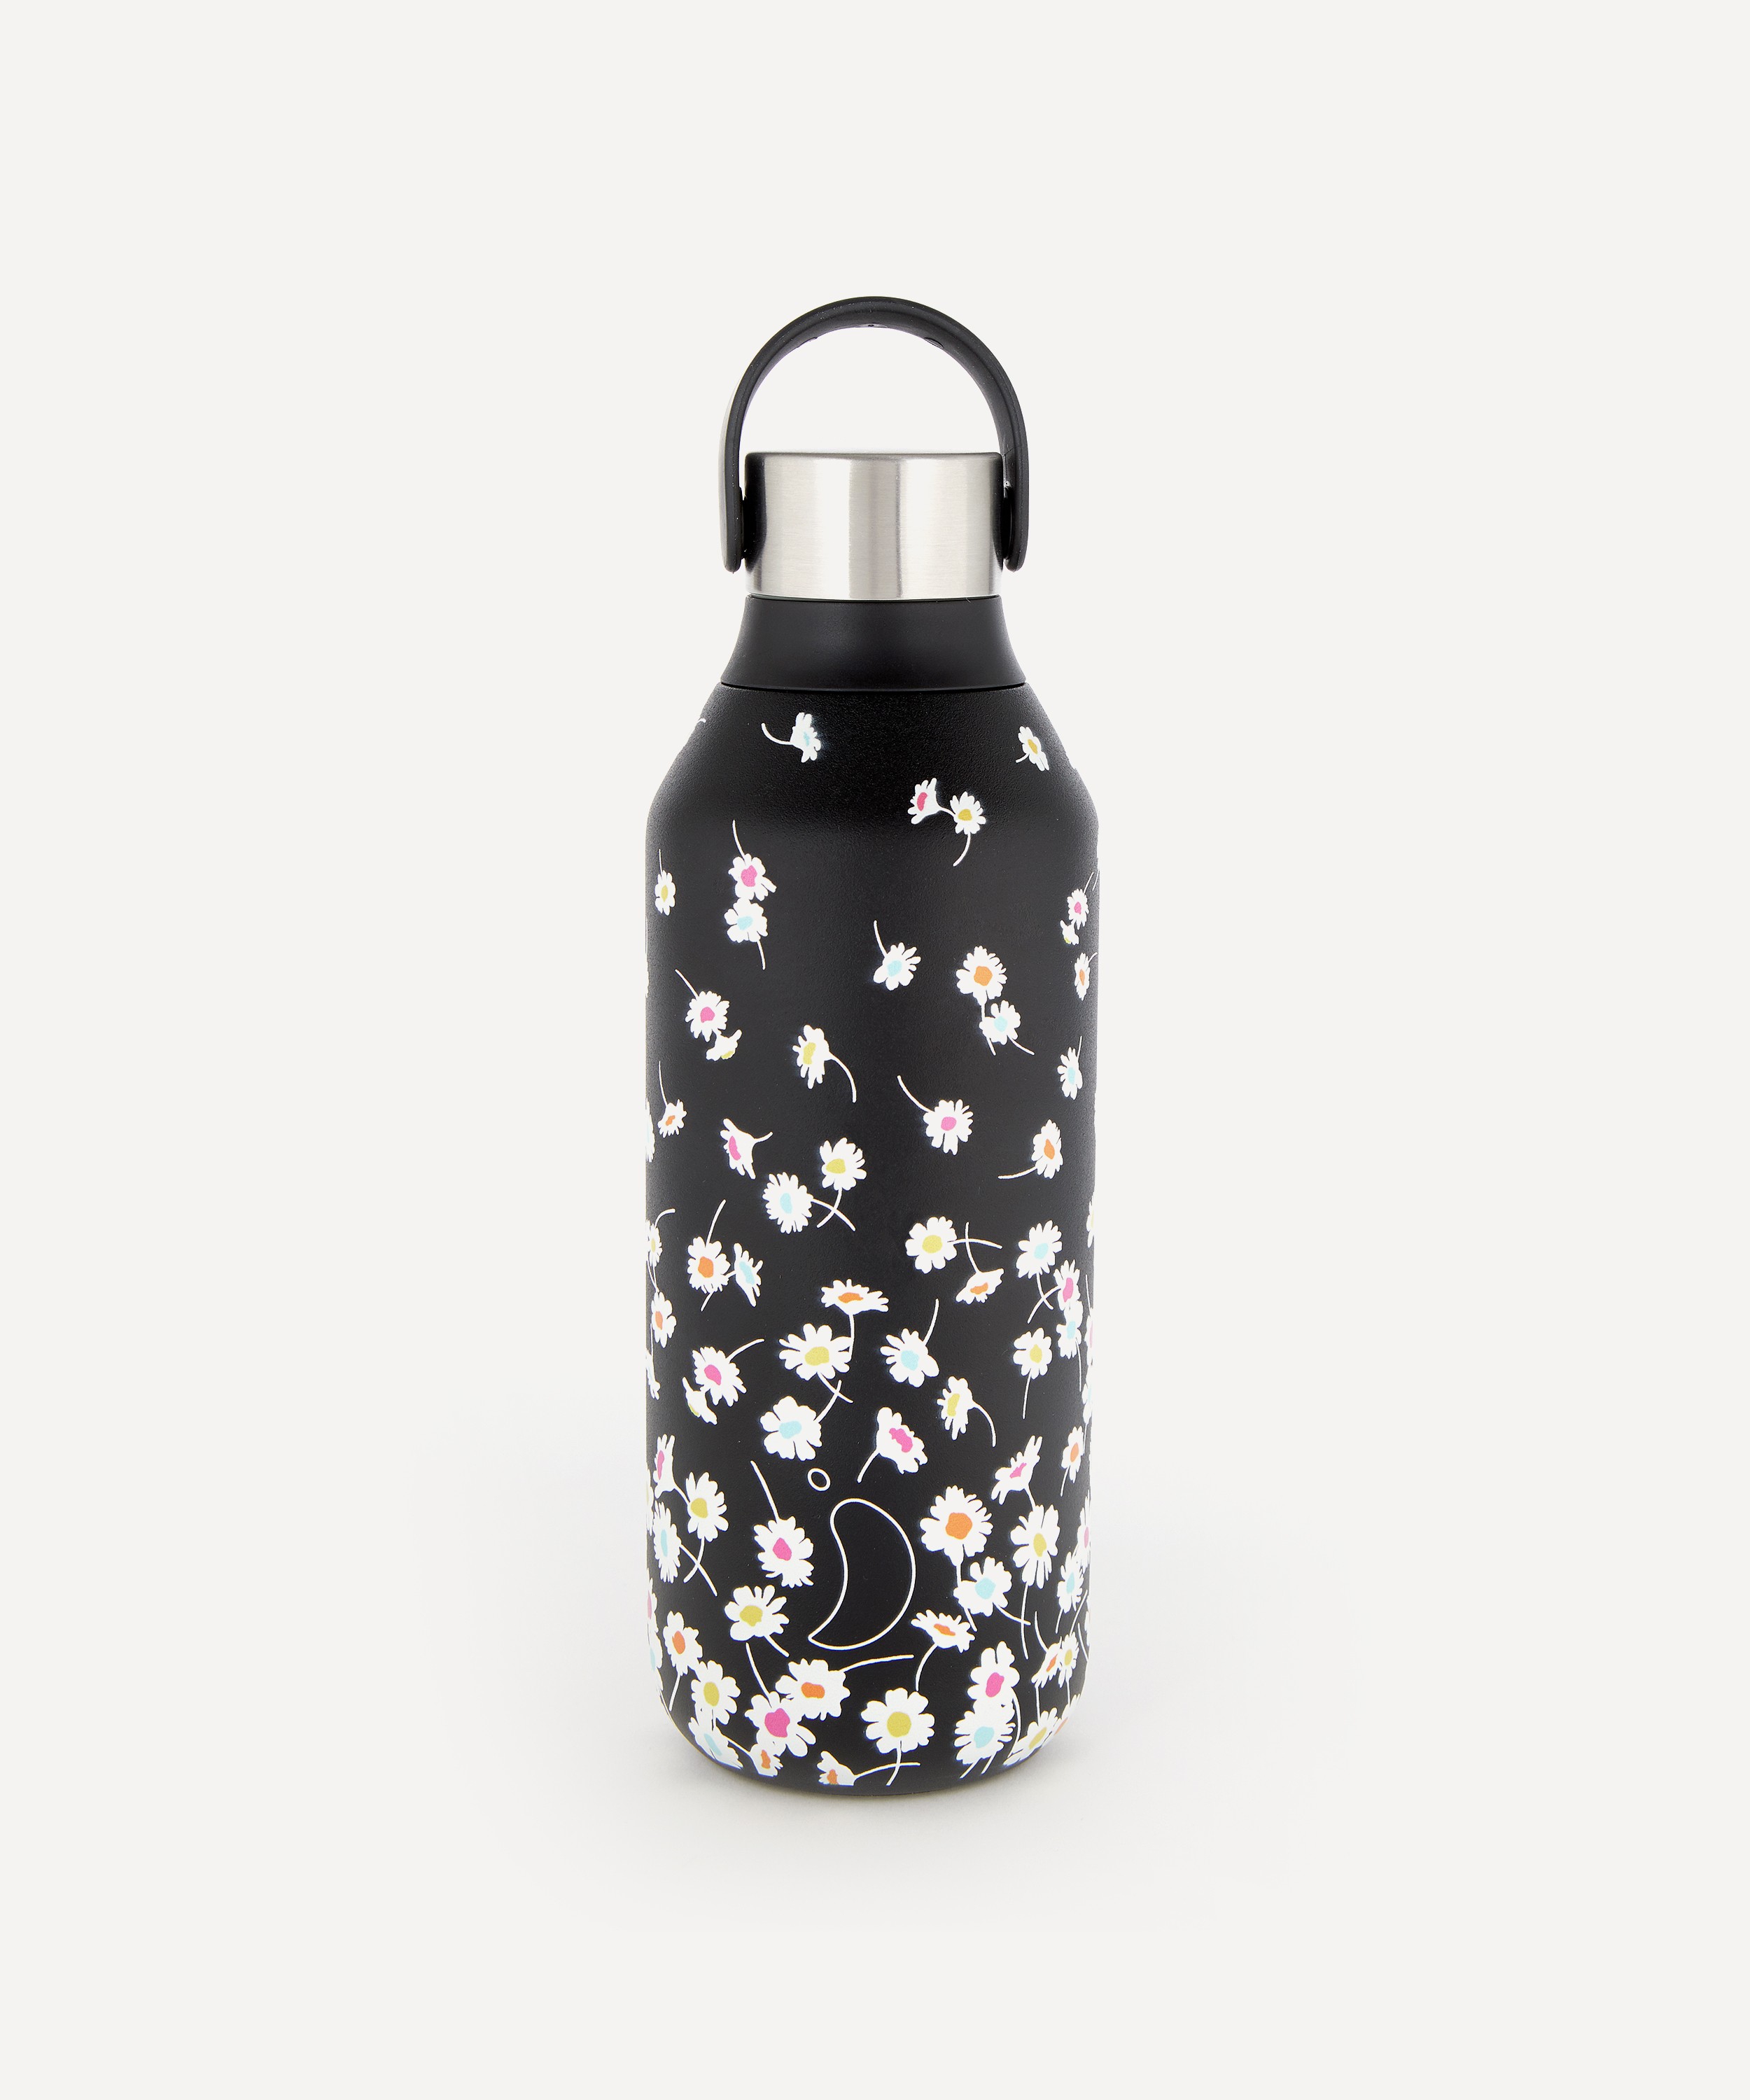 Chilly's black stainless steel bottle, branded bottles